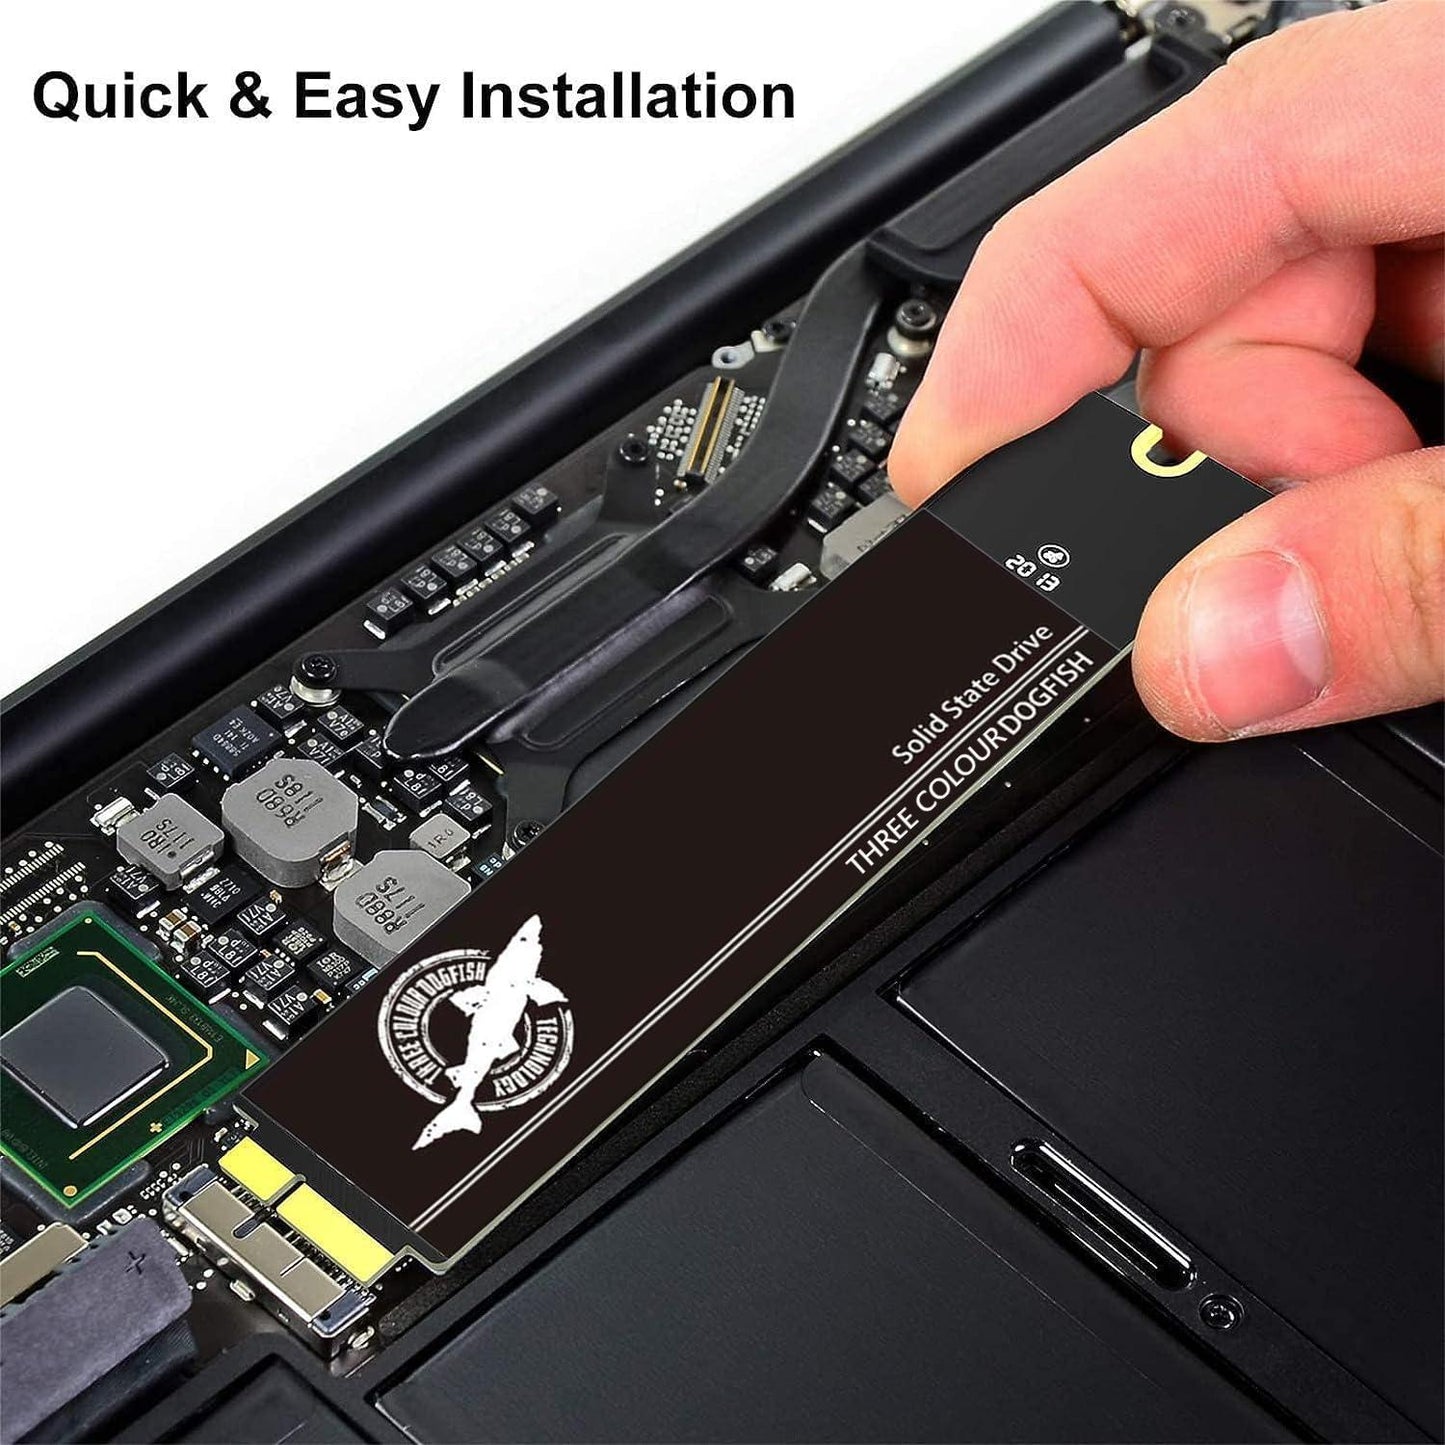 THREE COLOUR DOGFISH SSD for MacBook Air 2012 A1465 (EMC 2558), A1466 (EMC 2559)